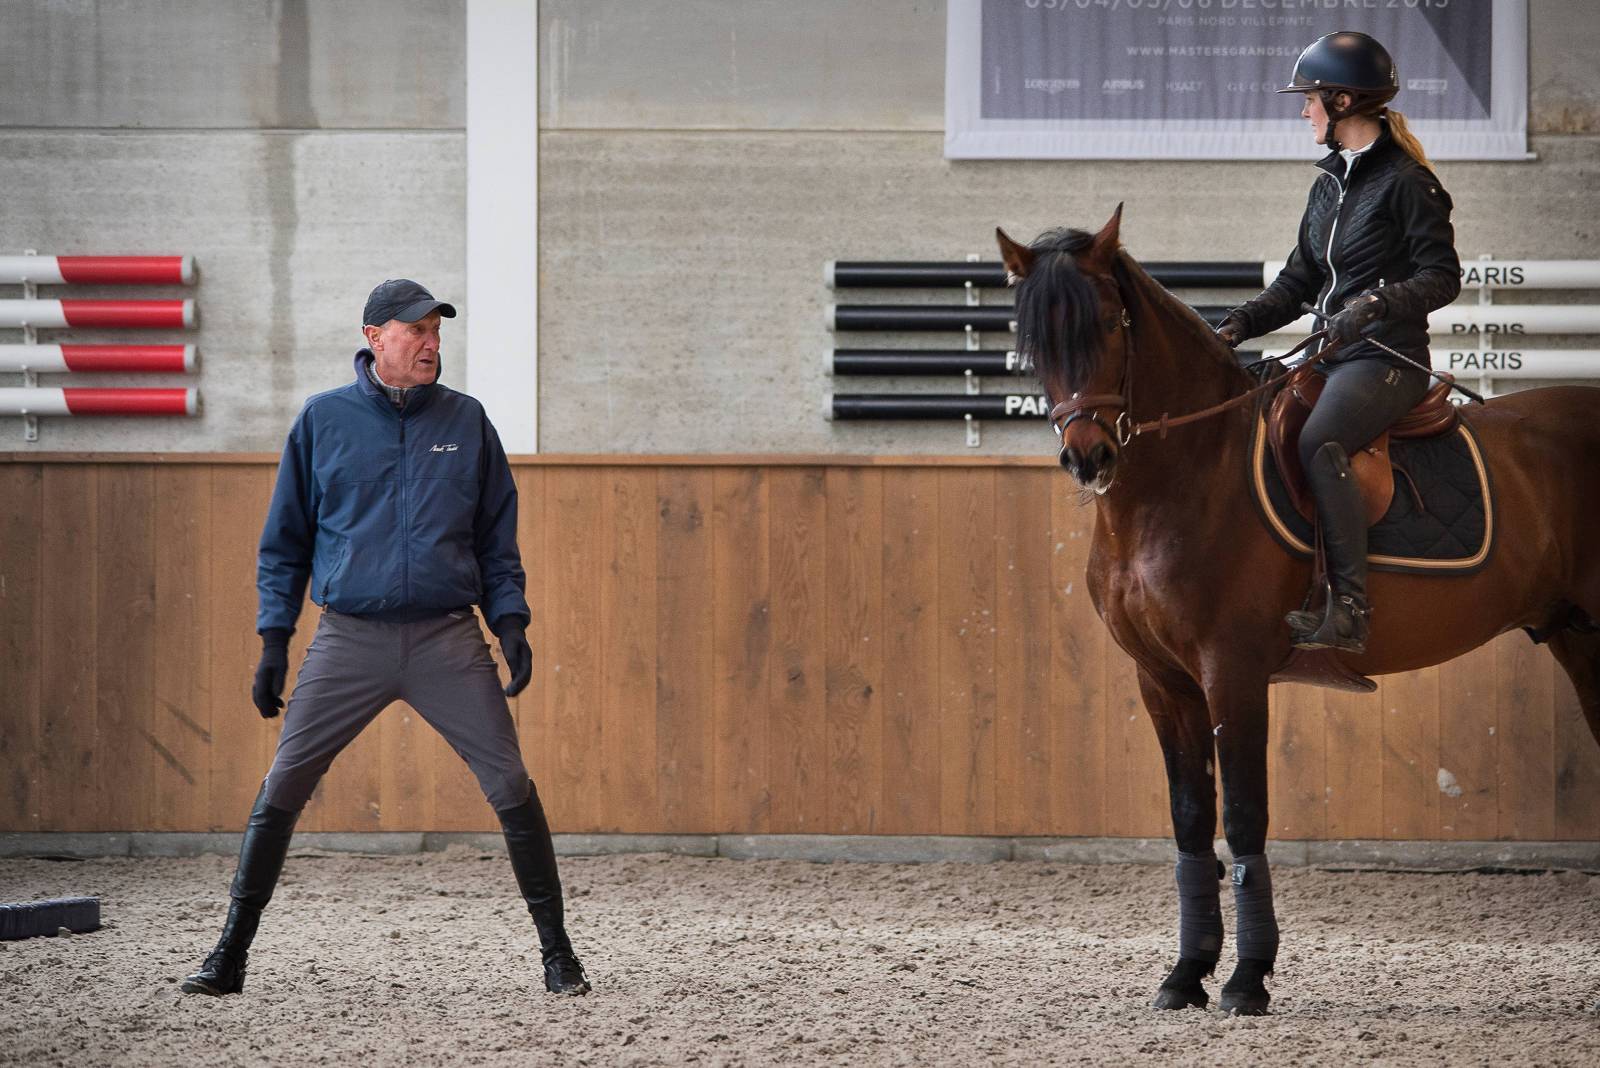 Jos Kumps: "De eerste stap in horsemanship? Je mag blij zijn dat het paard je toelaat om op zijn rug te zitten!"